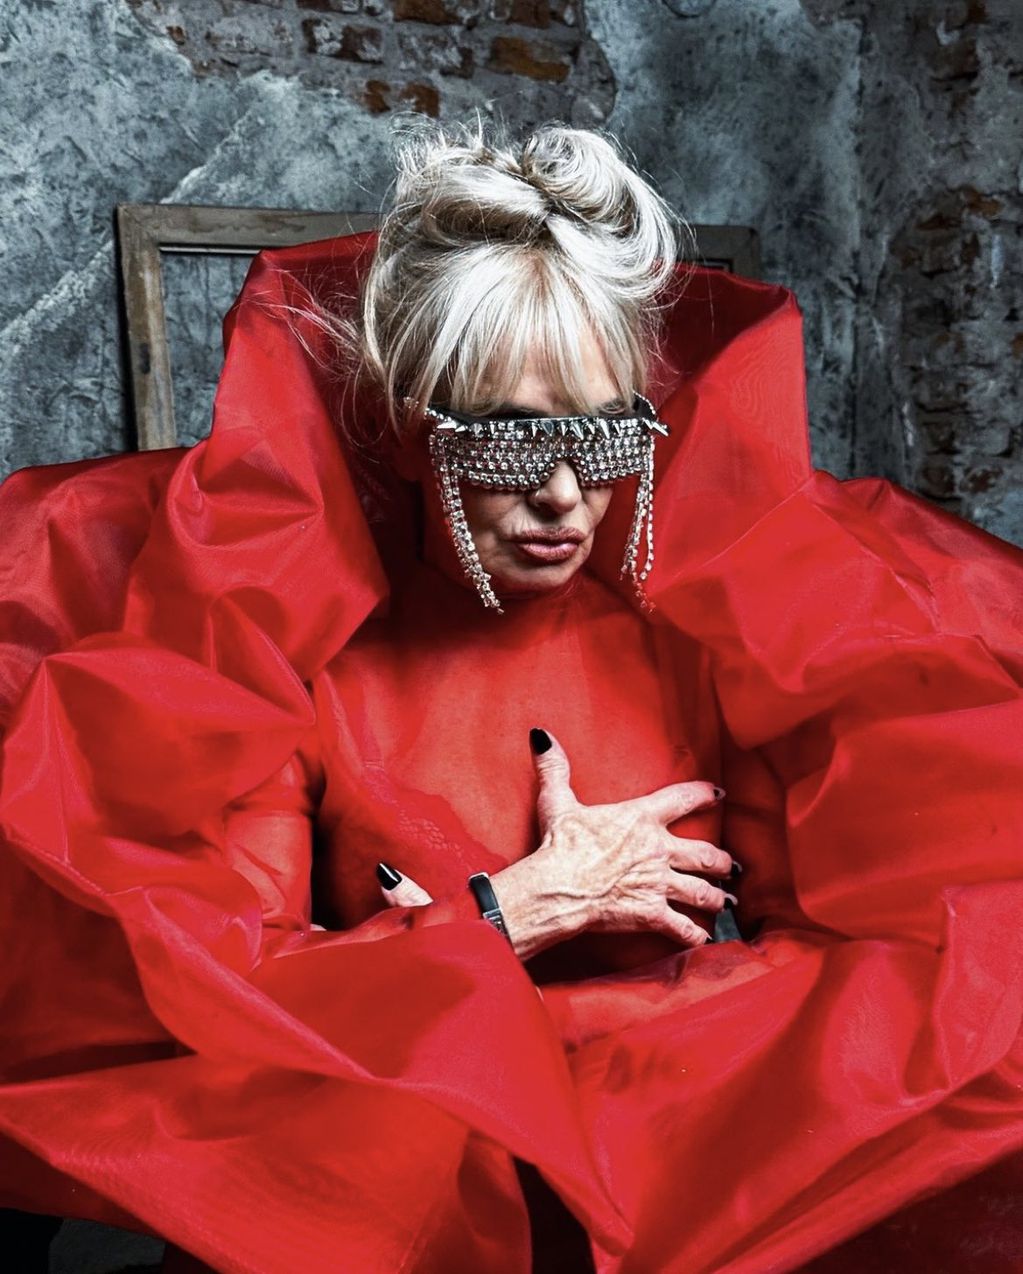 Isabel de Gran Hermano imitó a Lady Gaga en una provocativa producción. Foto: instagram.com/isabeldenegri78